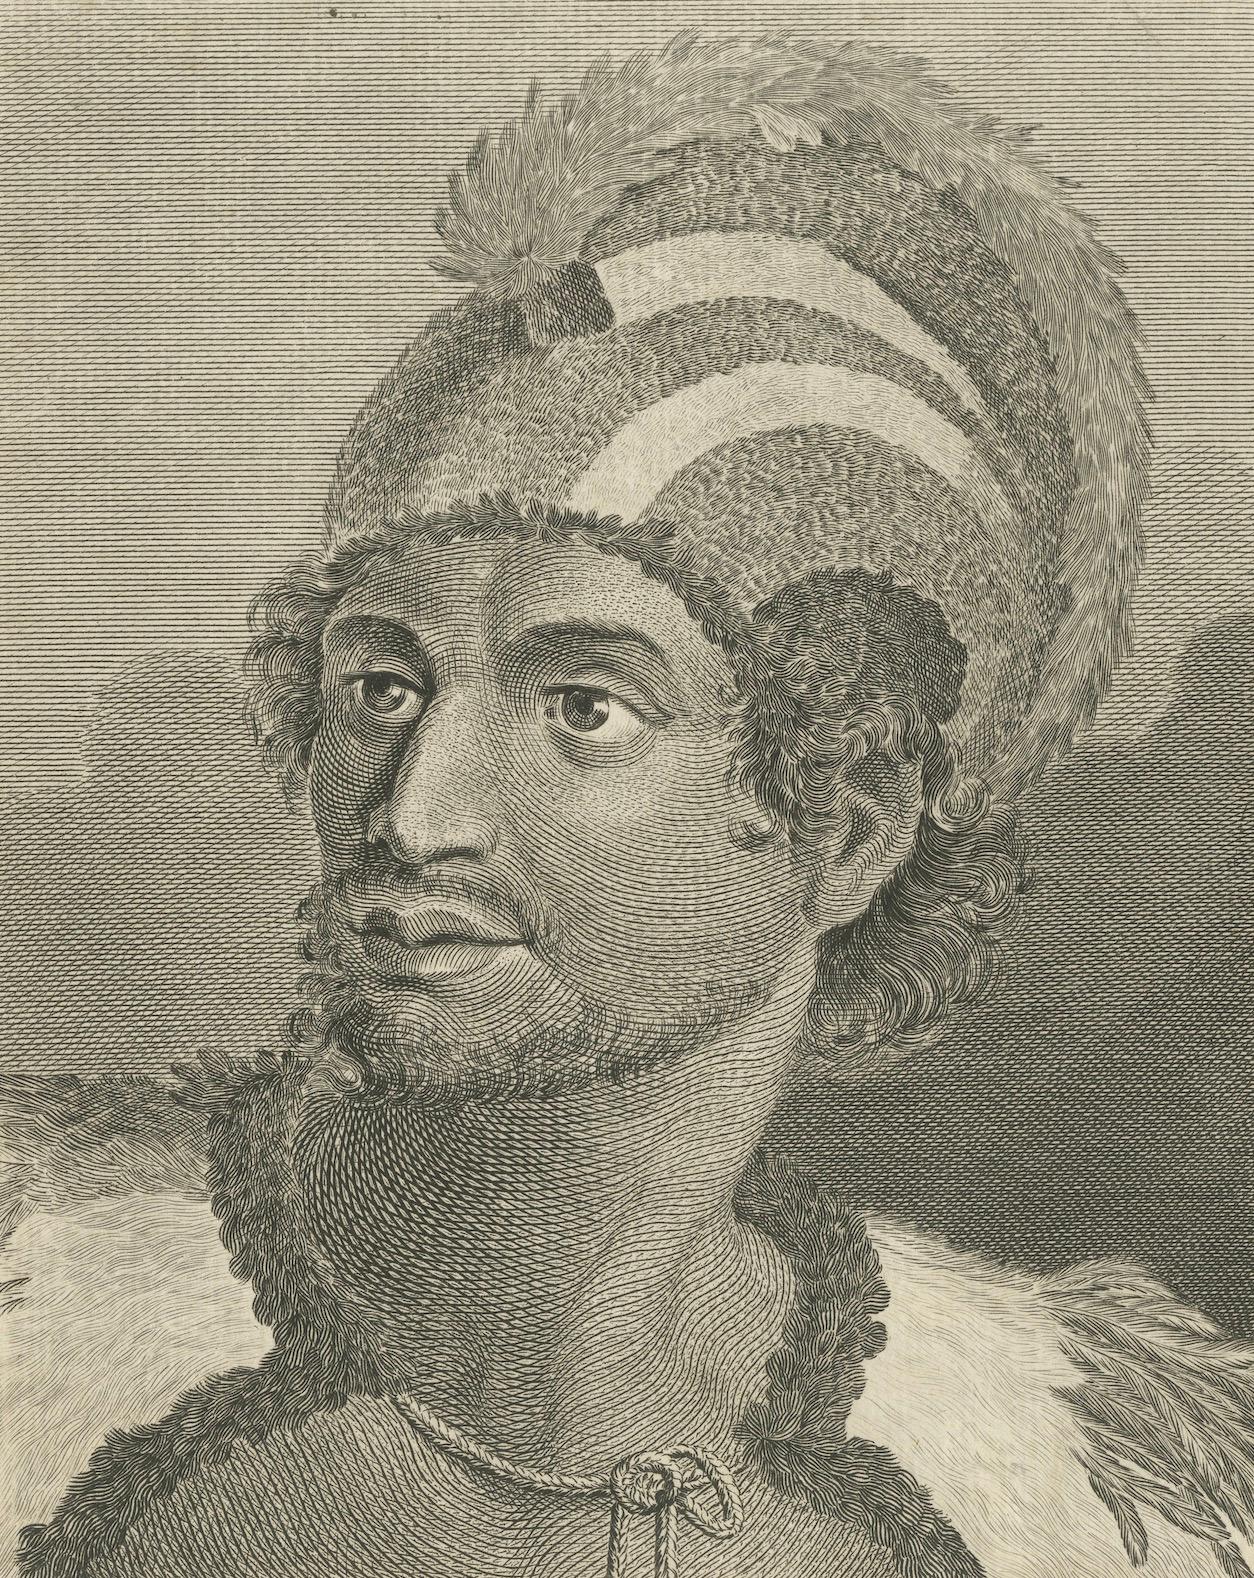 Porträts von Adeligen von den Sandwich-Inseln (Hawaii), veröffentlicht um 1790 (18. Jahrhundert) im Angebot